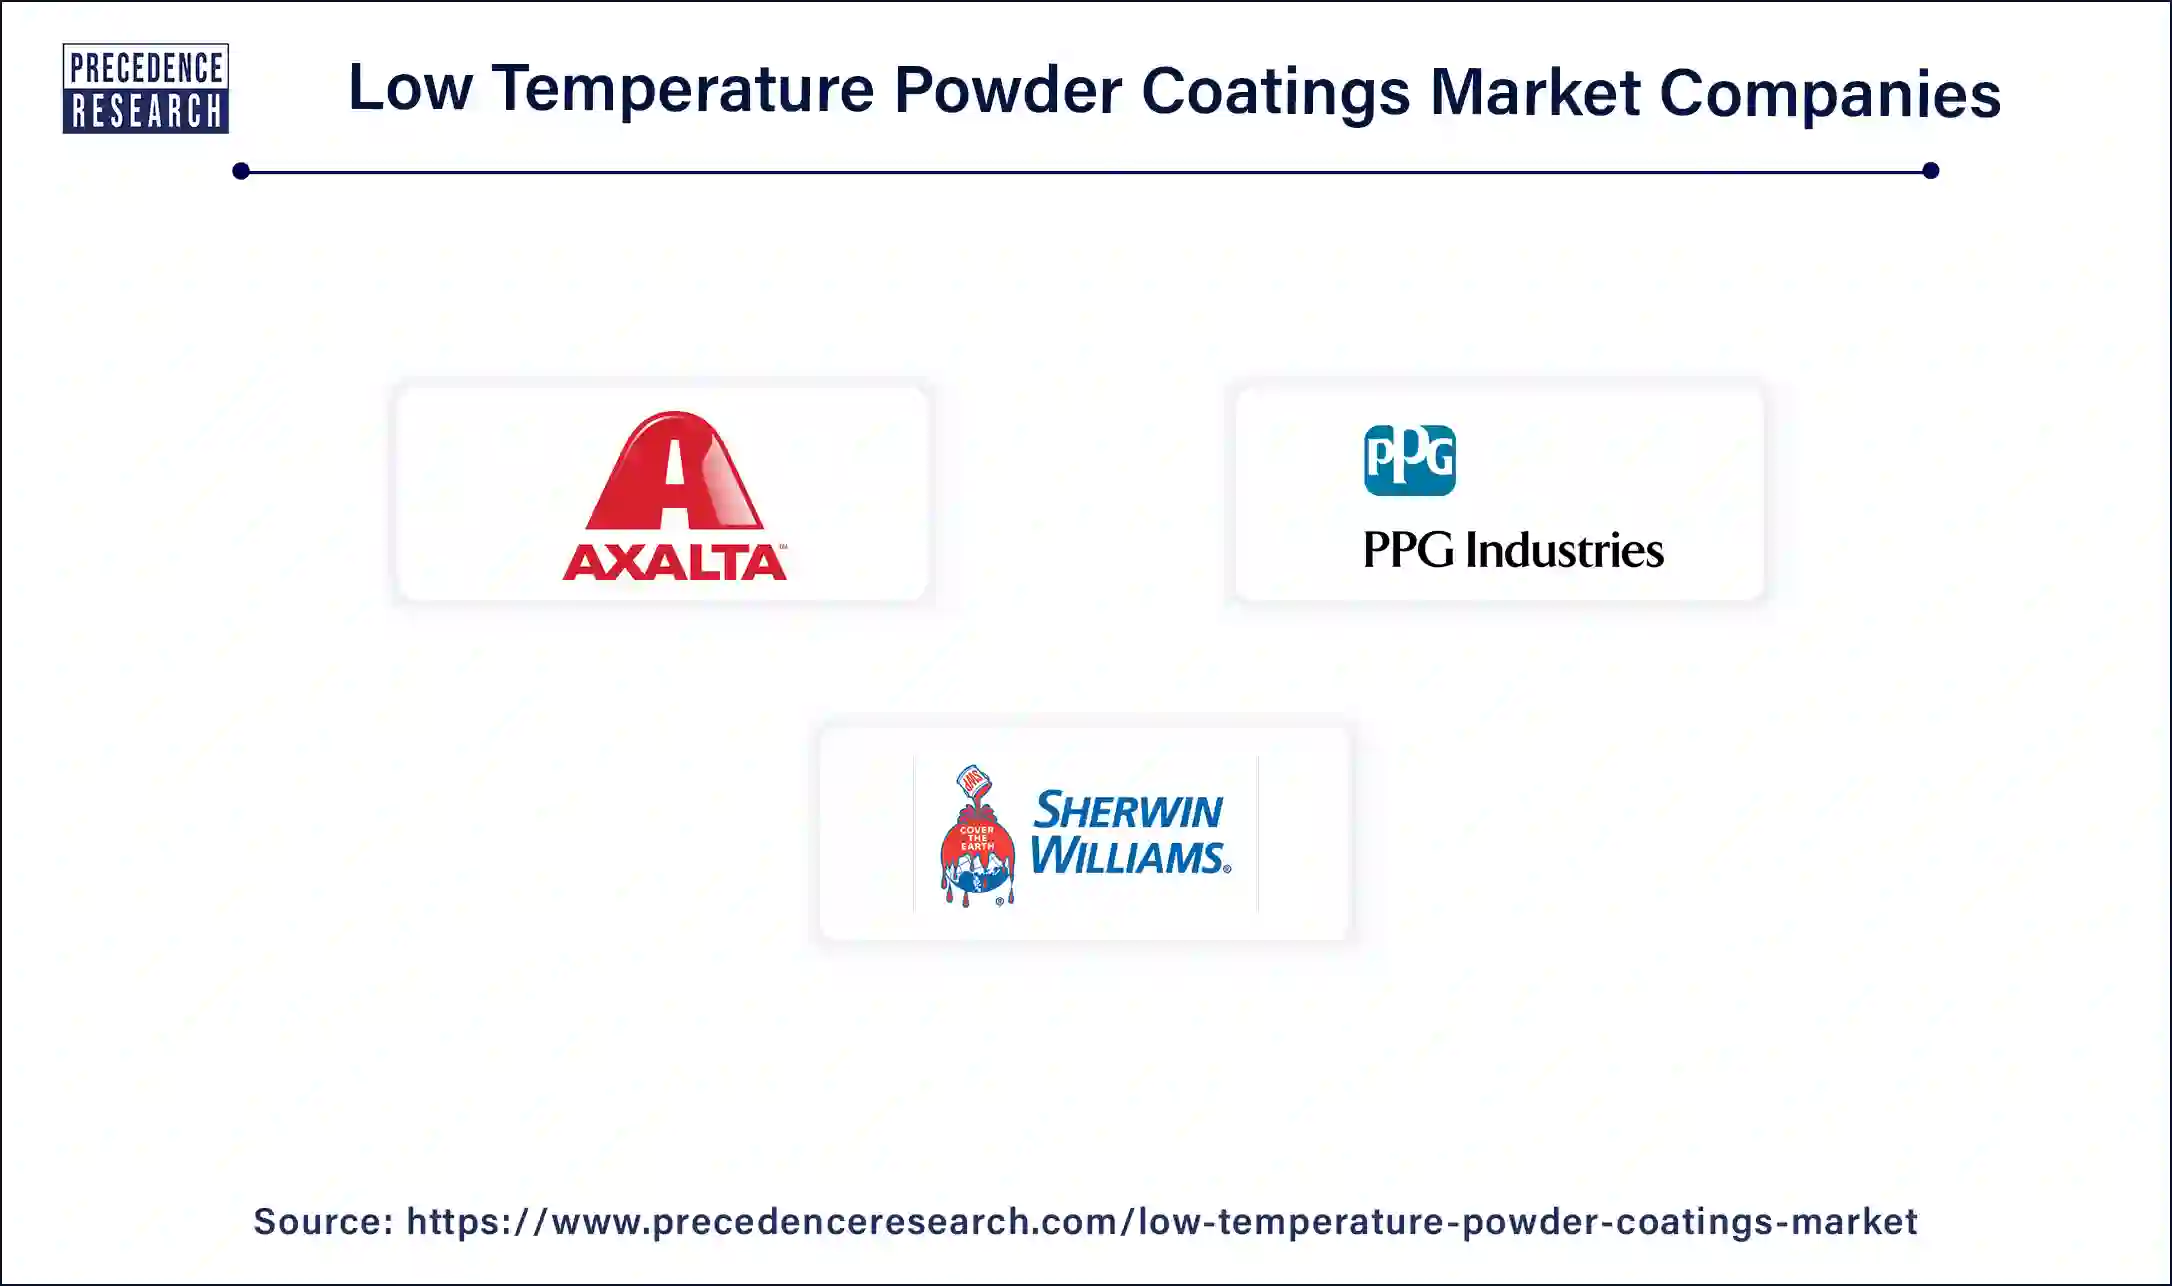 Low Temperature Powder Coatings Companies